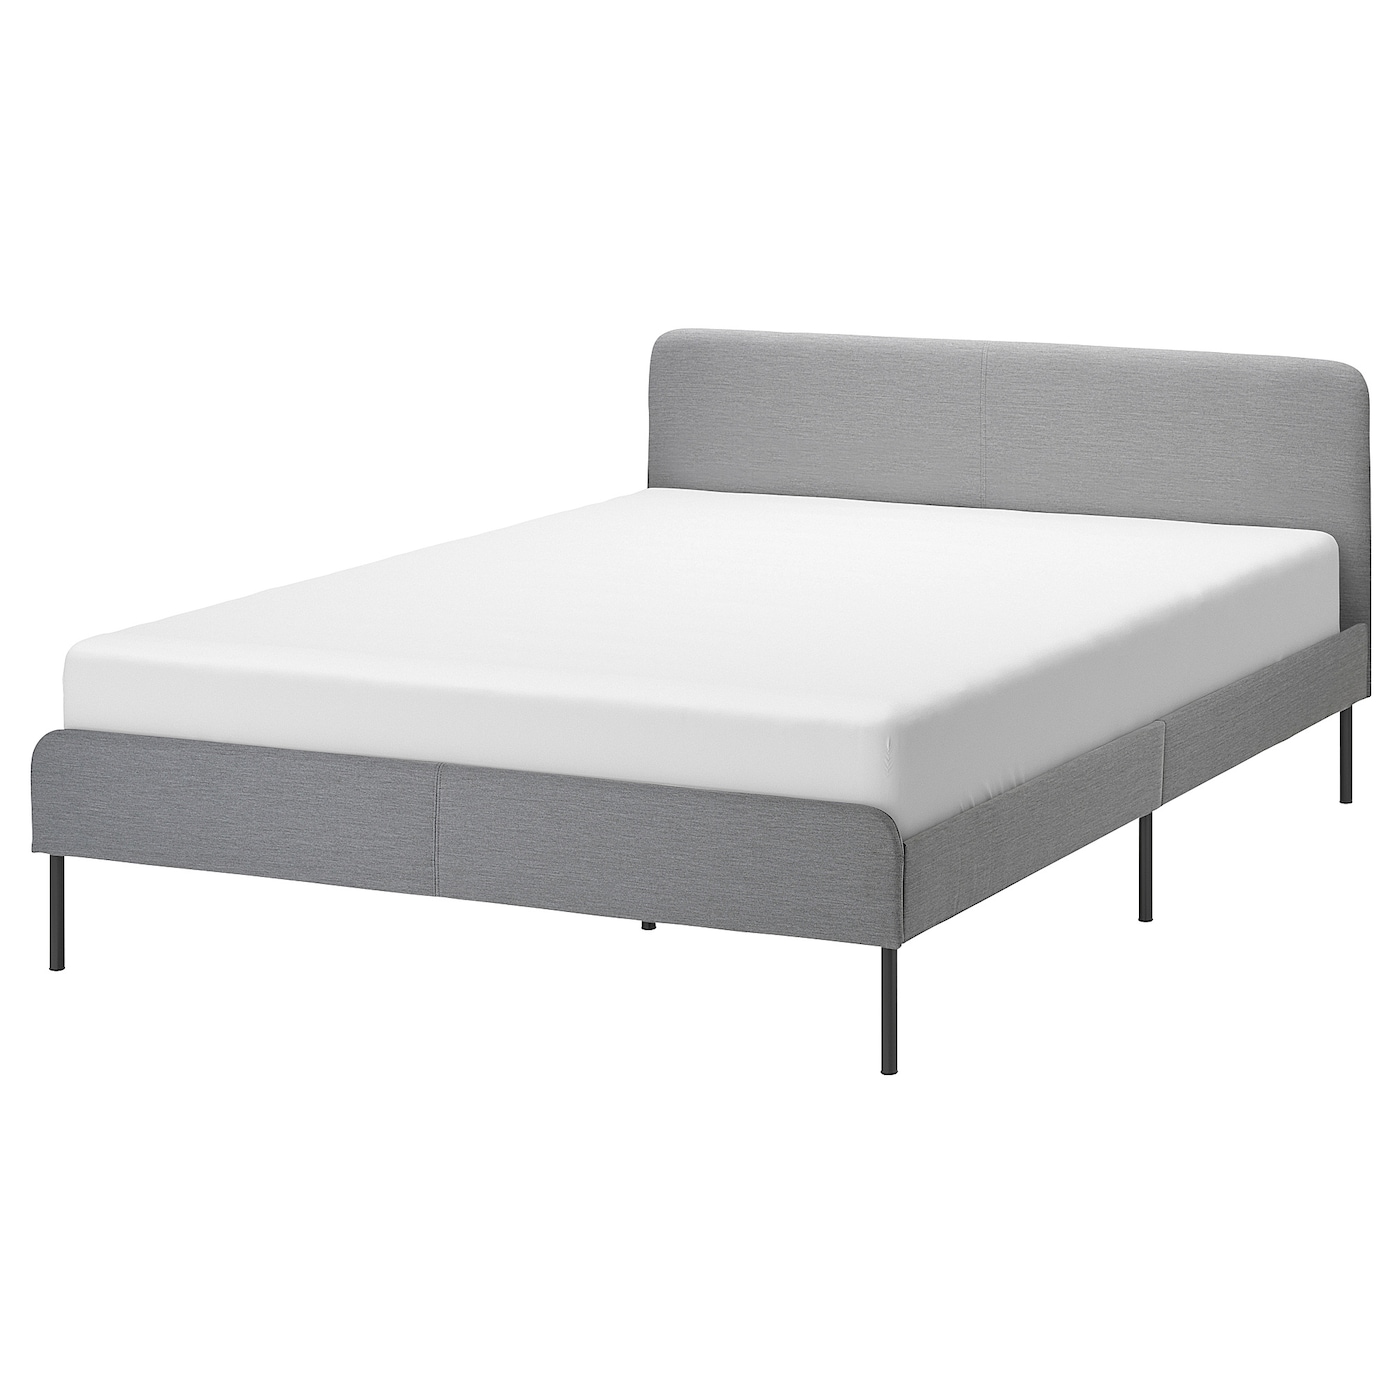 Двуспальная кровать - IKEA SLATTUM, 200х140 см, светло-серый, СЛАТТУМ ИКЕА